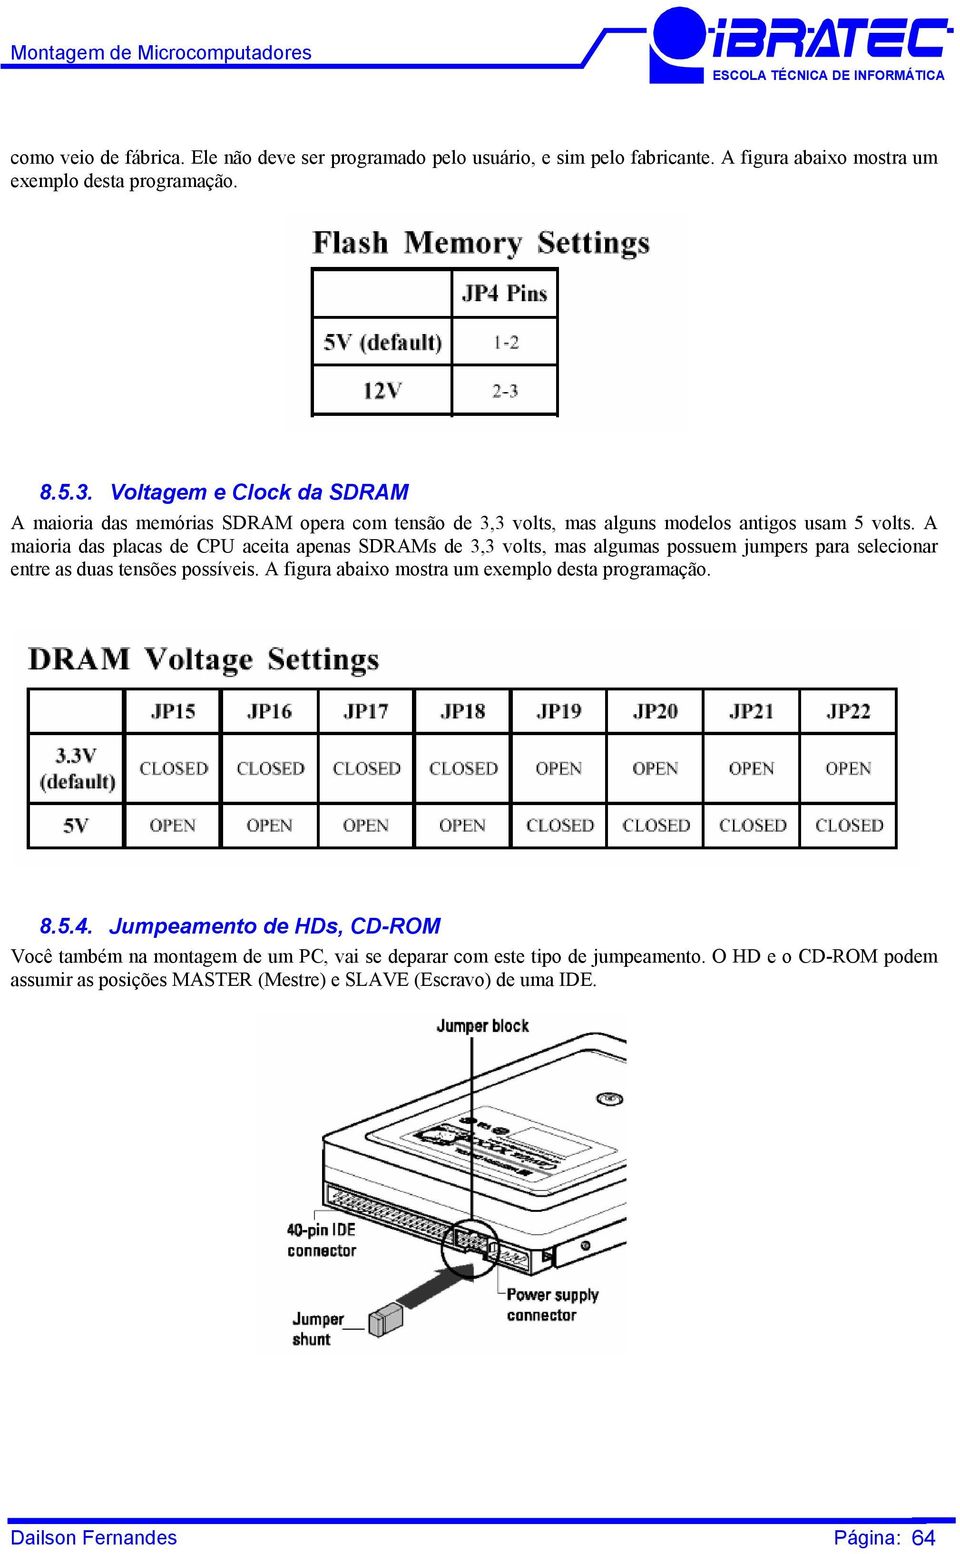 A maioria das placas de CPU aceita apenas SDRAMs de 3,3 volts, mas algumas possuem jumpers para selecionar entre as duas tensões possíveis.